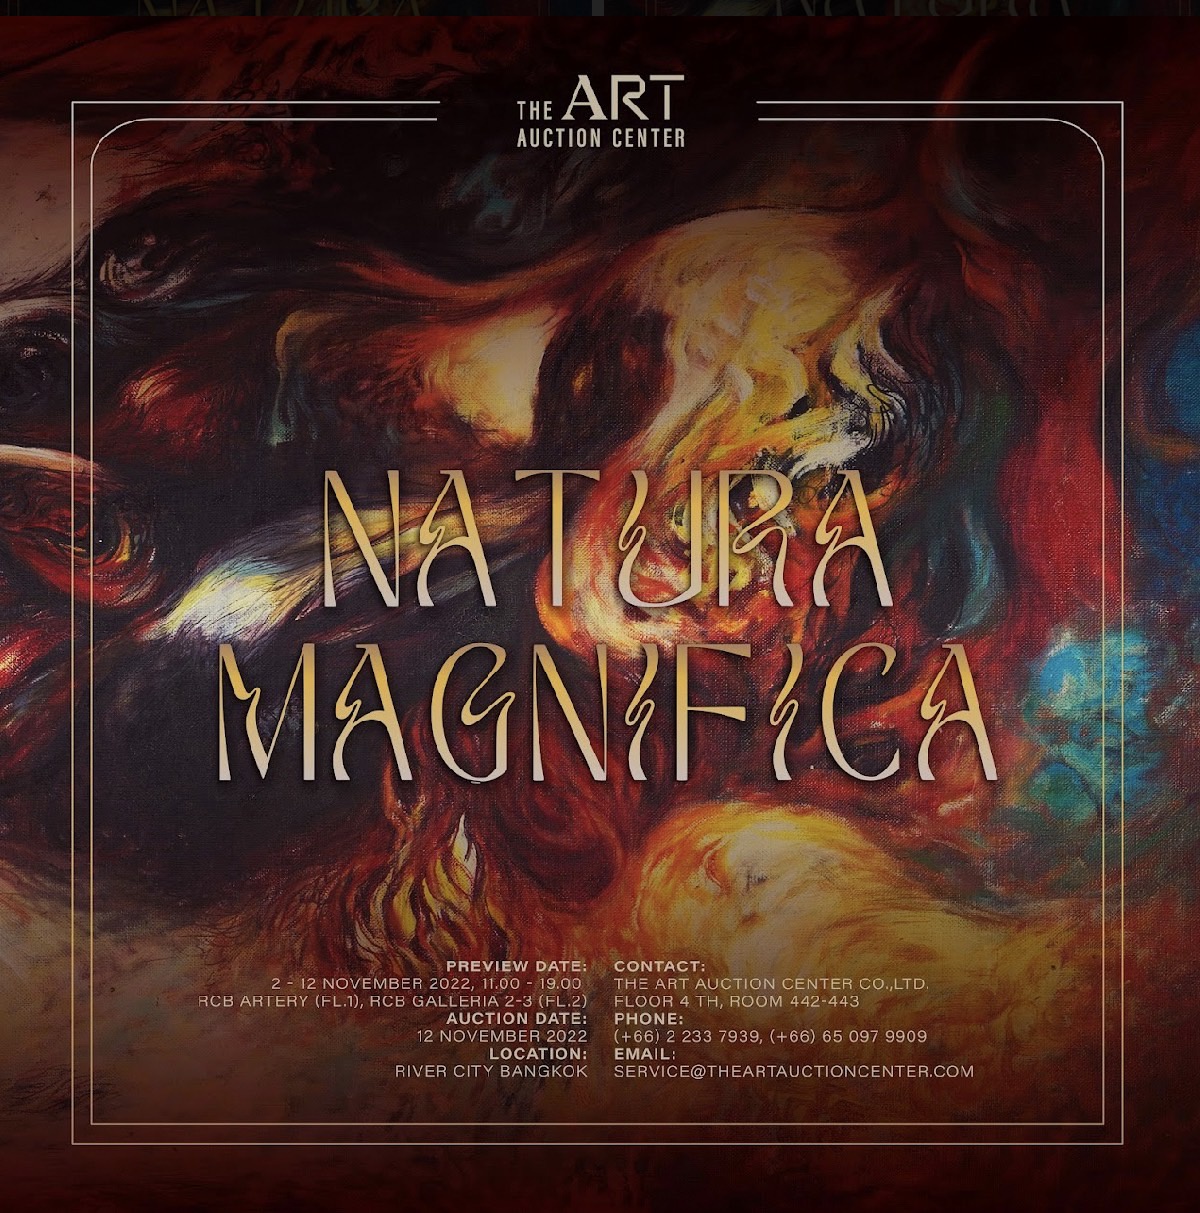 วงการศิลปะไทยคักคัก ดิ อาร์ต อ๊อคชั่น เซ็นเตอร์ (The Art Auction Center) เตรียมจัดประมูลผลงานศิลปะครั้งใหญ่แห่งปี ภายใต้ชื่อ NATURA MAGNIFICA